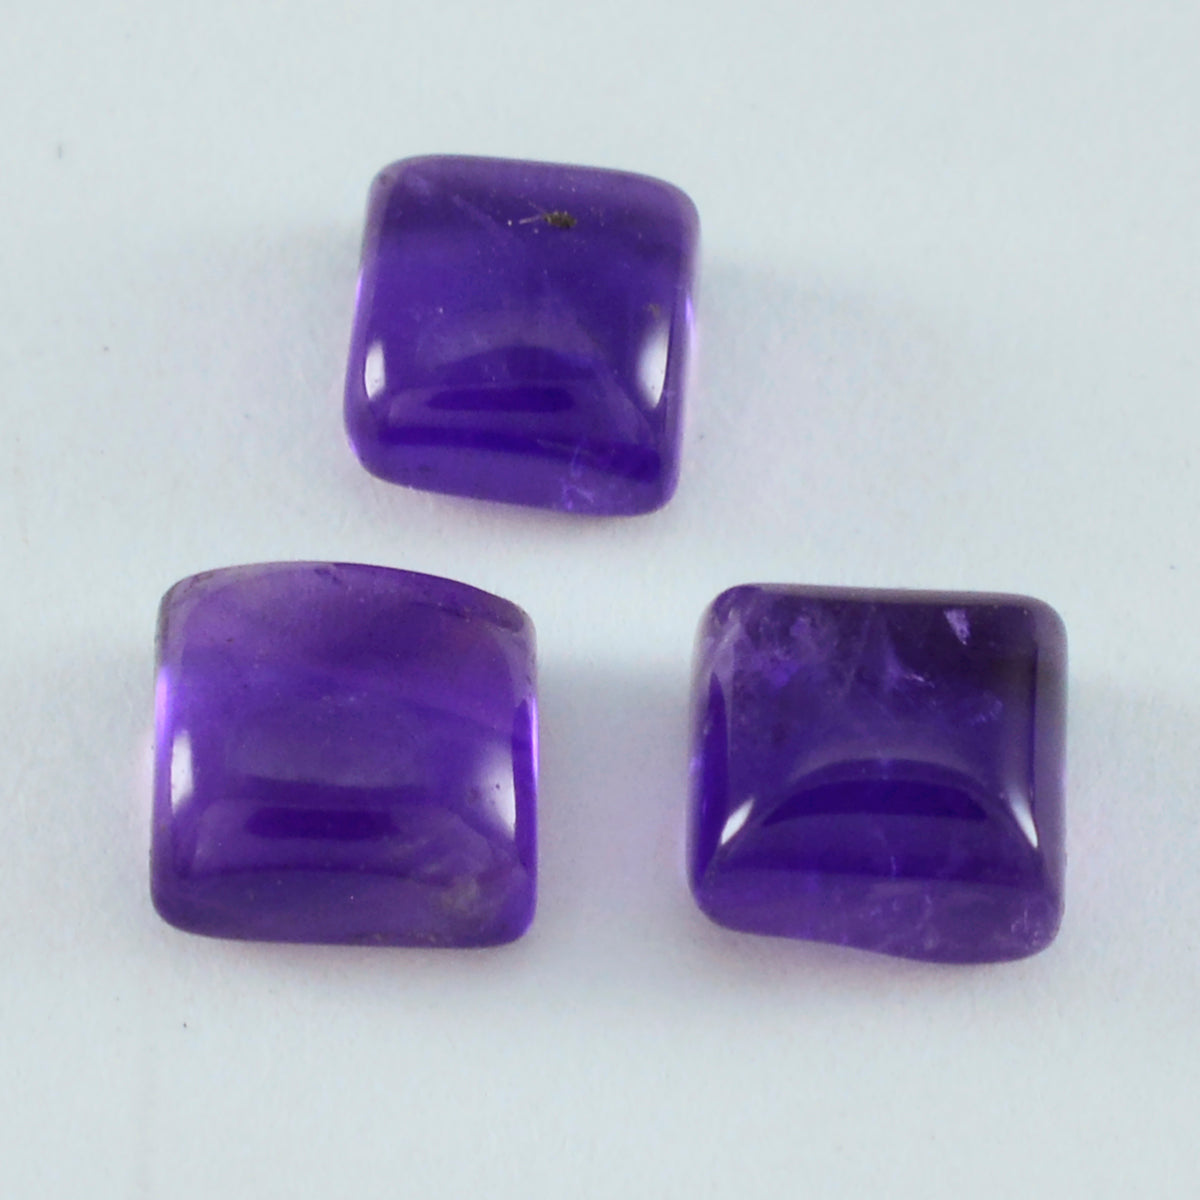 riyogems 1pc cabochon d'améthyste violette 14x14 mm forme carrée gemmes de qualité étonnante